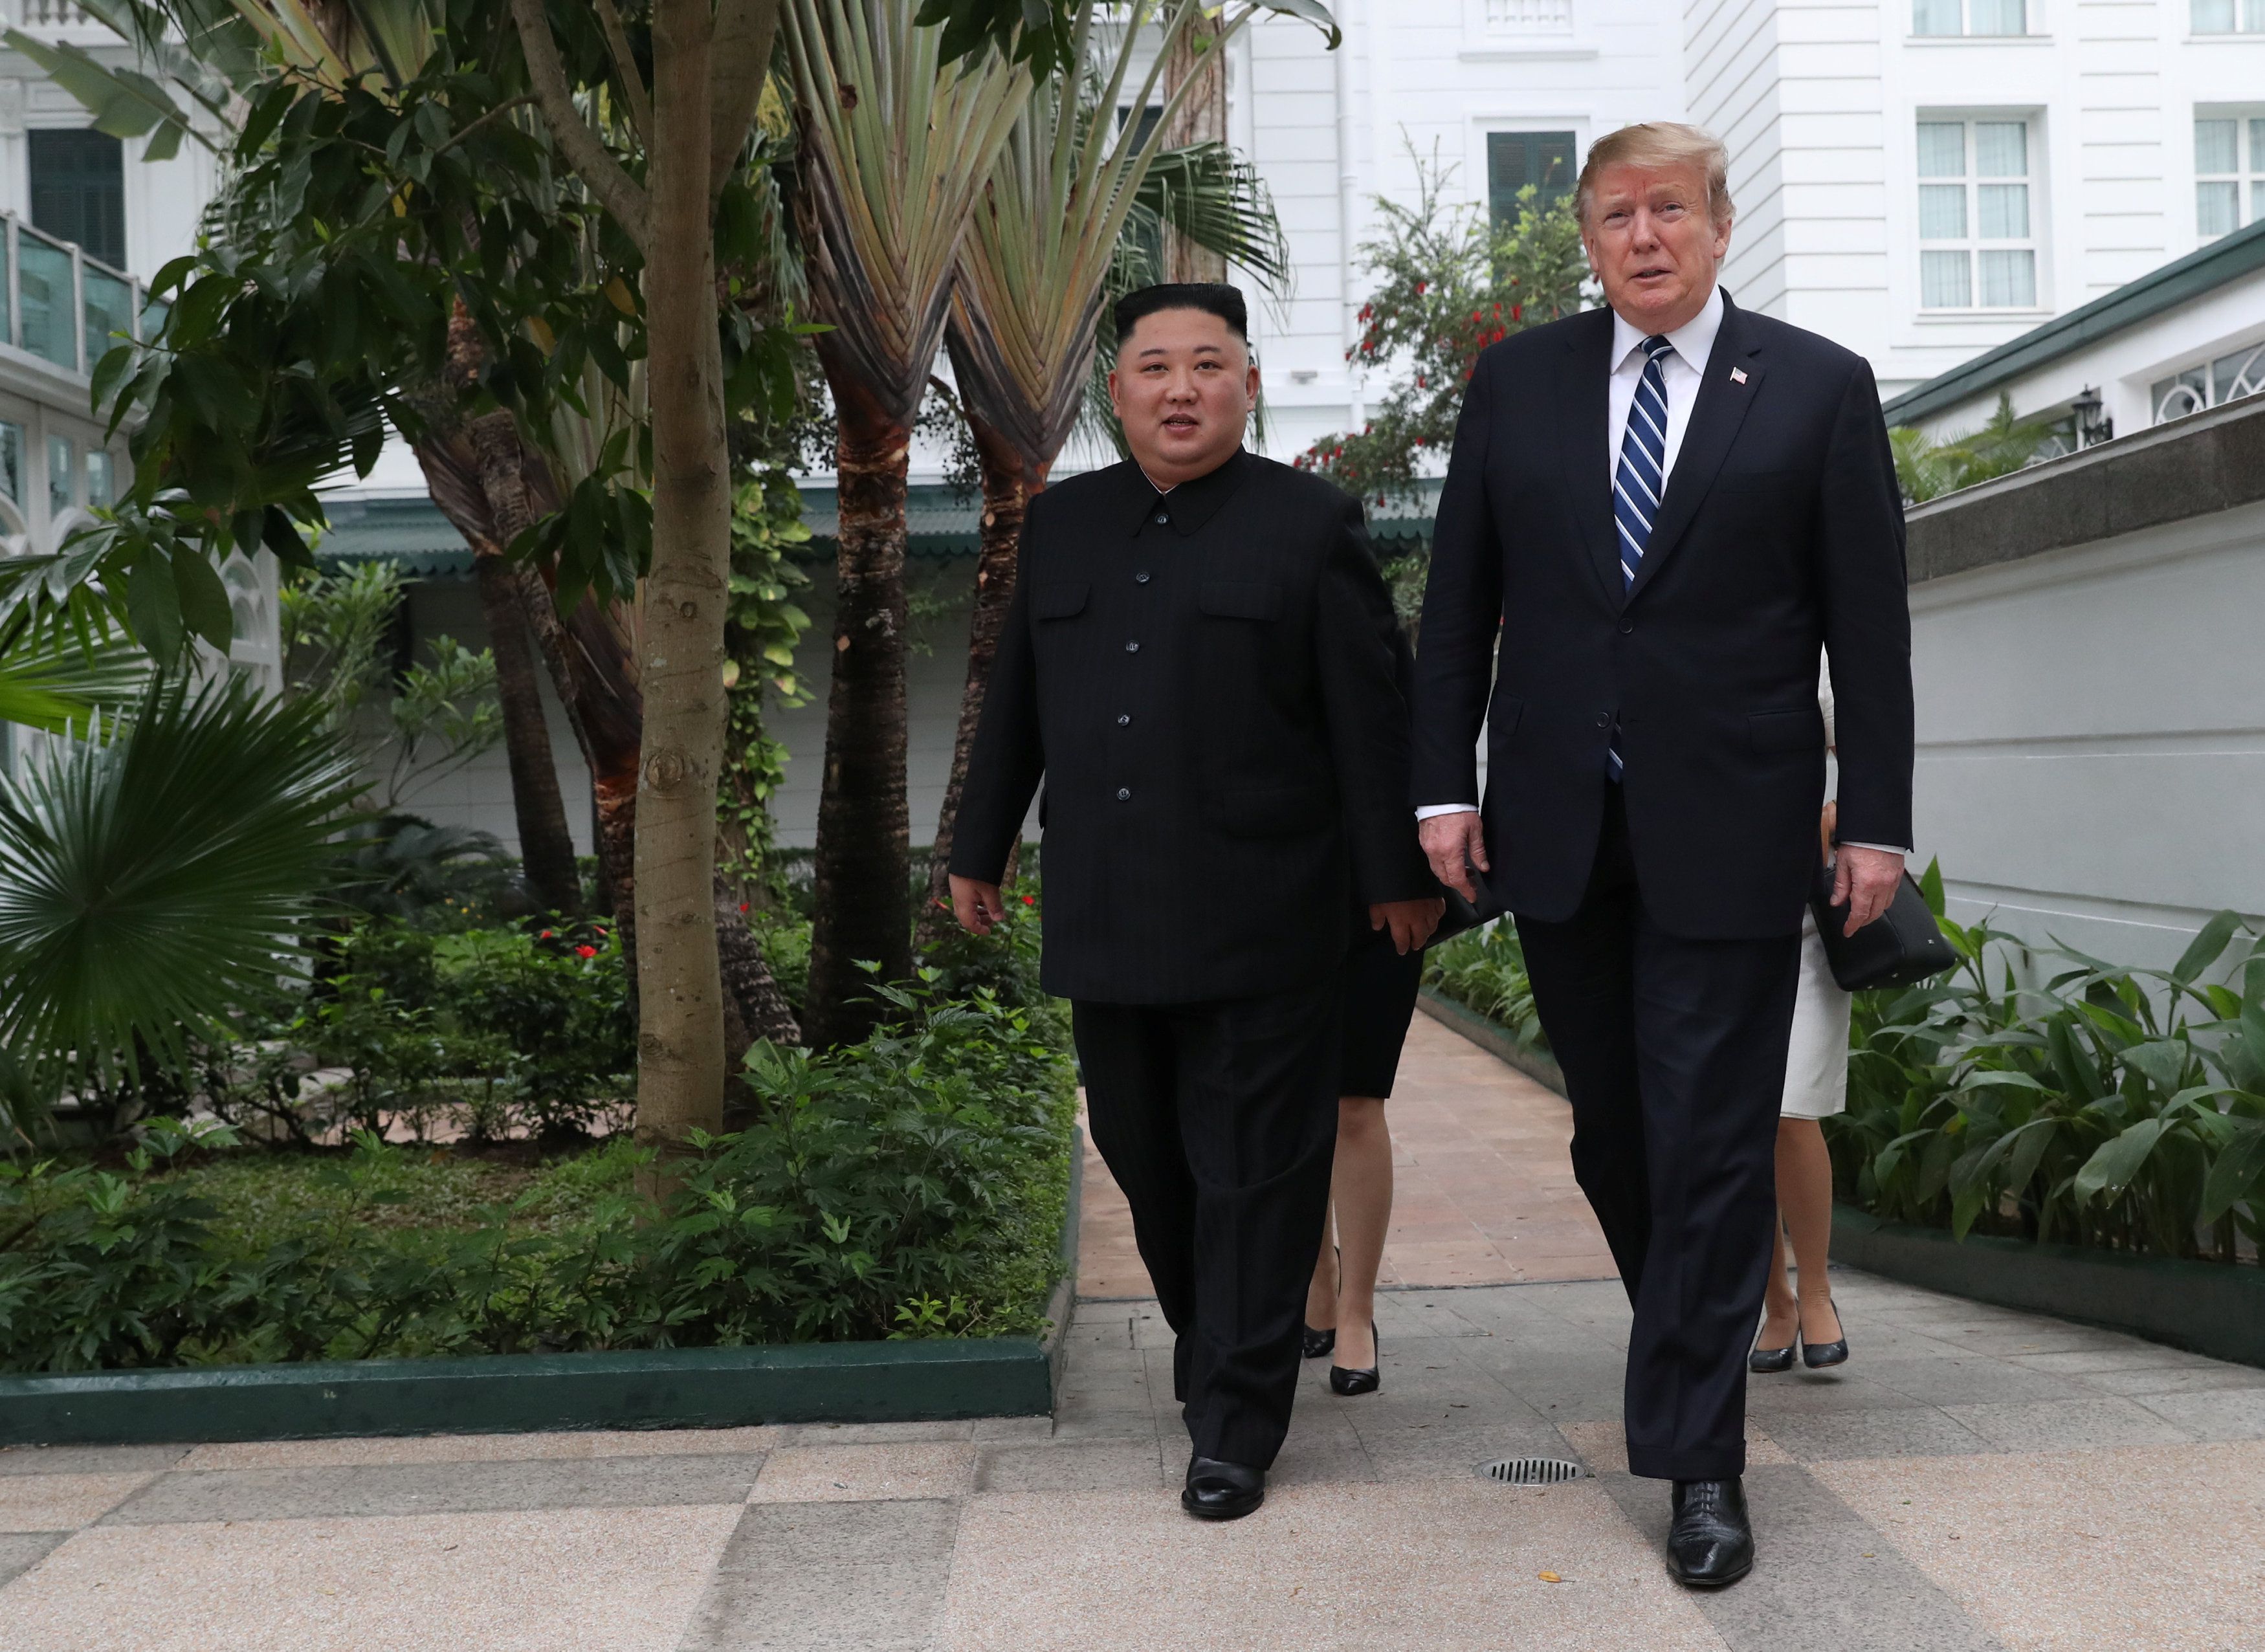 El líder norcoreano Kim Jong-un y el presidente de Estados Unidos Donald Trump caminan por el jardín del hotel Metropole durante la segunda cumbre entre Corea del Norte y Estados Unidos en Hanoi, Vietnam, el 28 de febrero de 2019 (REUTERS/Leah Millis)